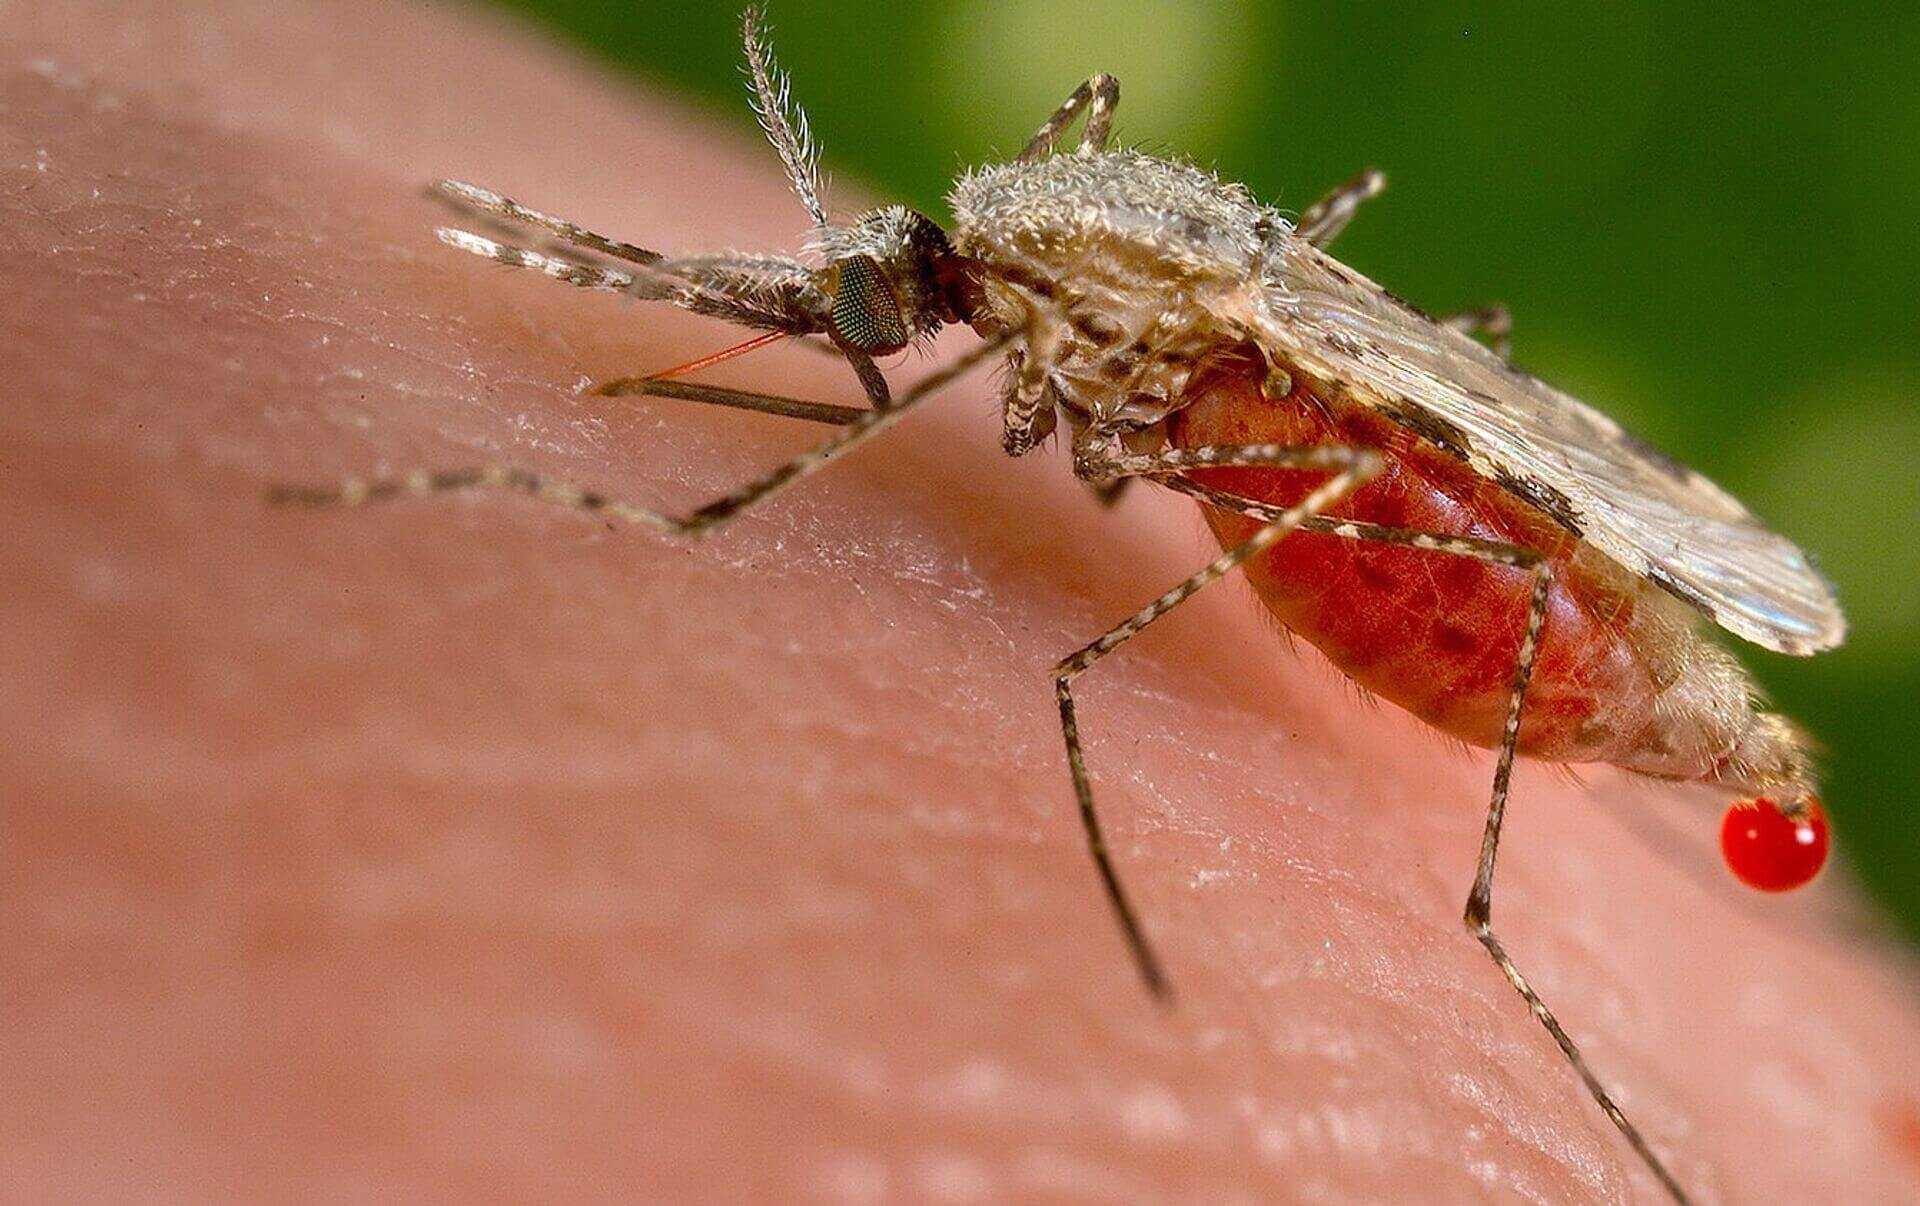 Что делать если укусил малярийный комар